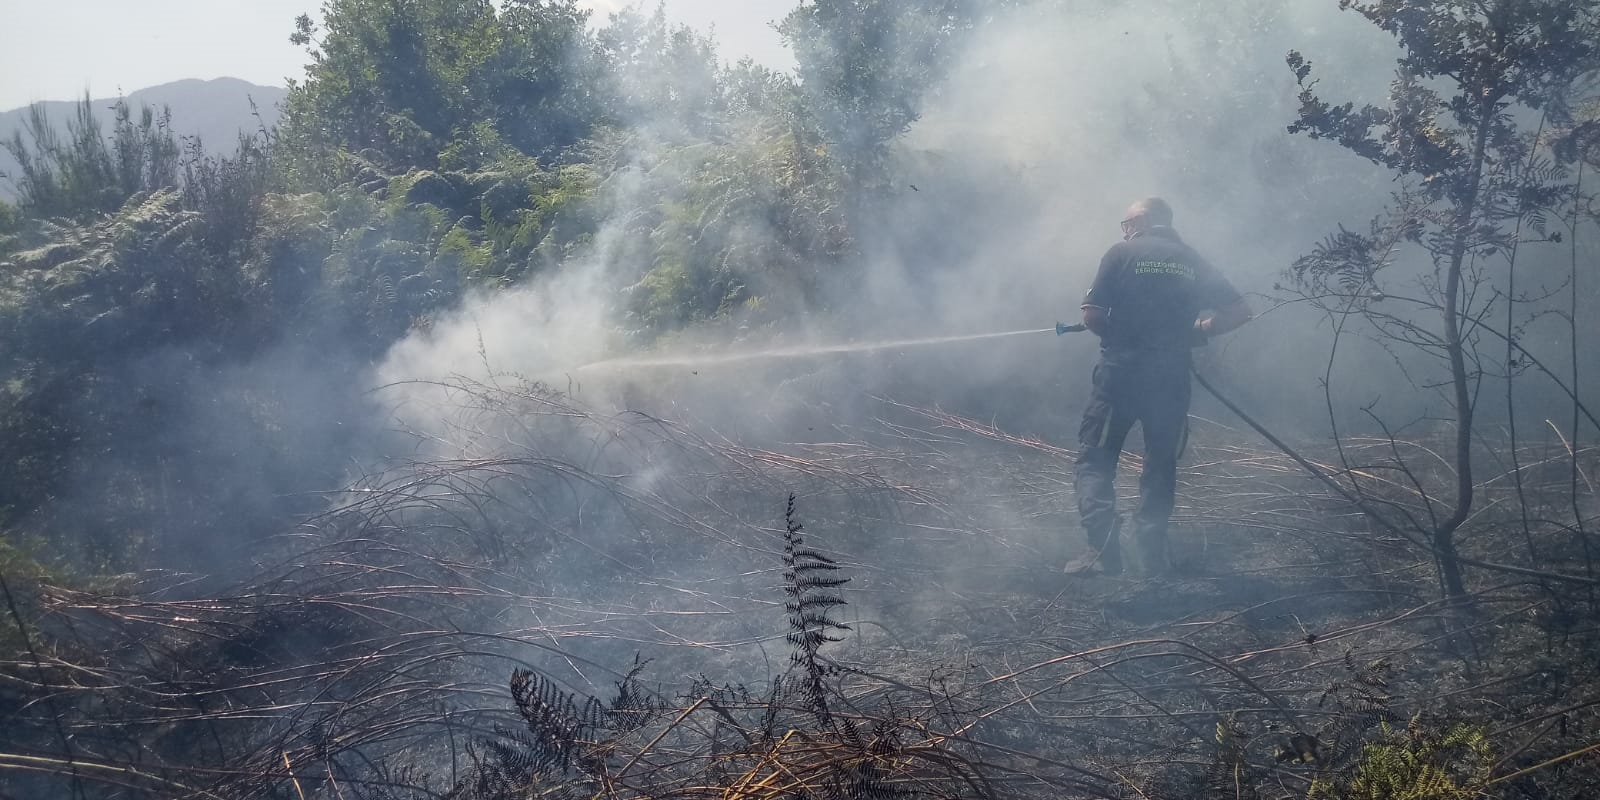 Ancora incendi in Irpinia: fiamme a Cerzeto, elicottero della Protezione civile a Montemiletto